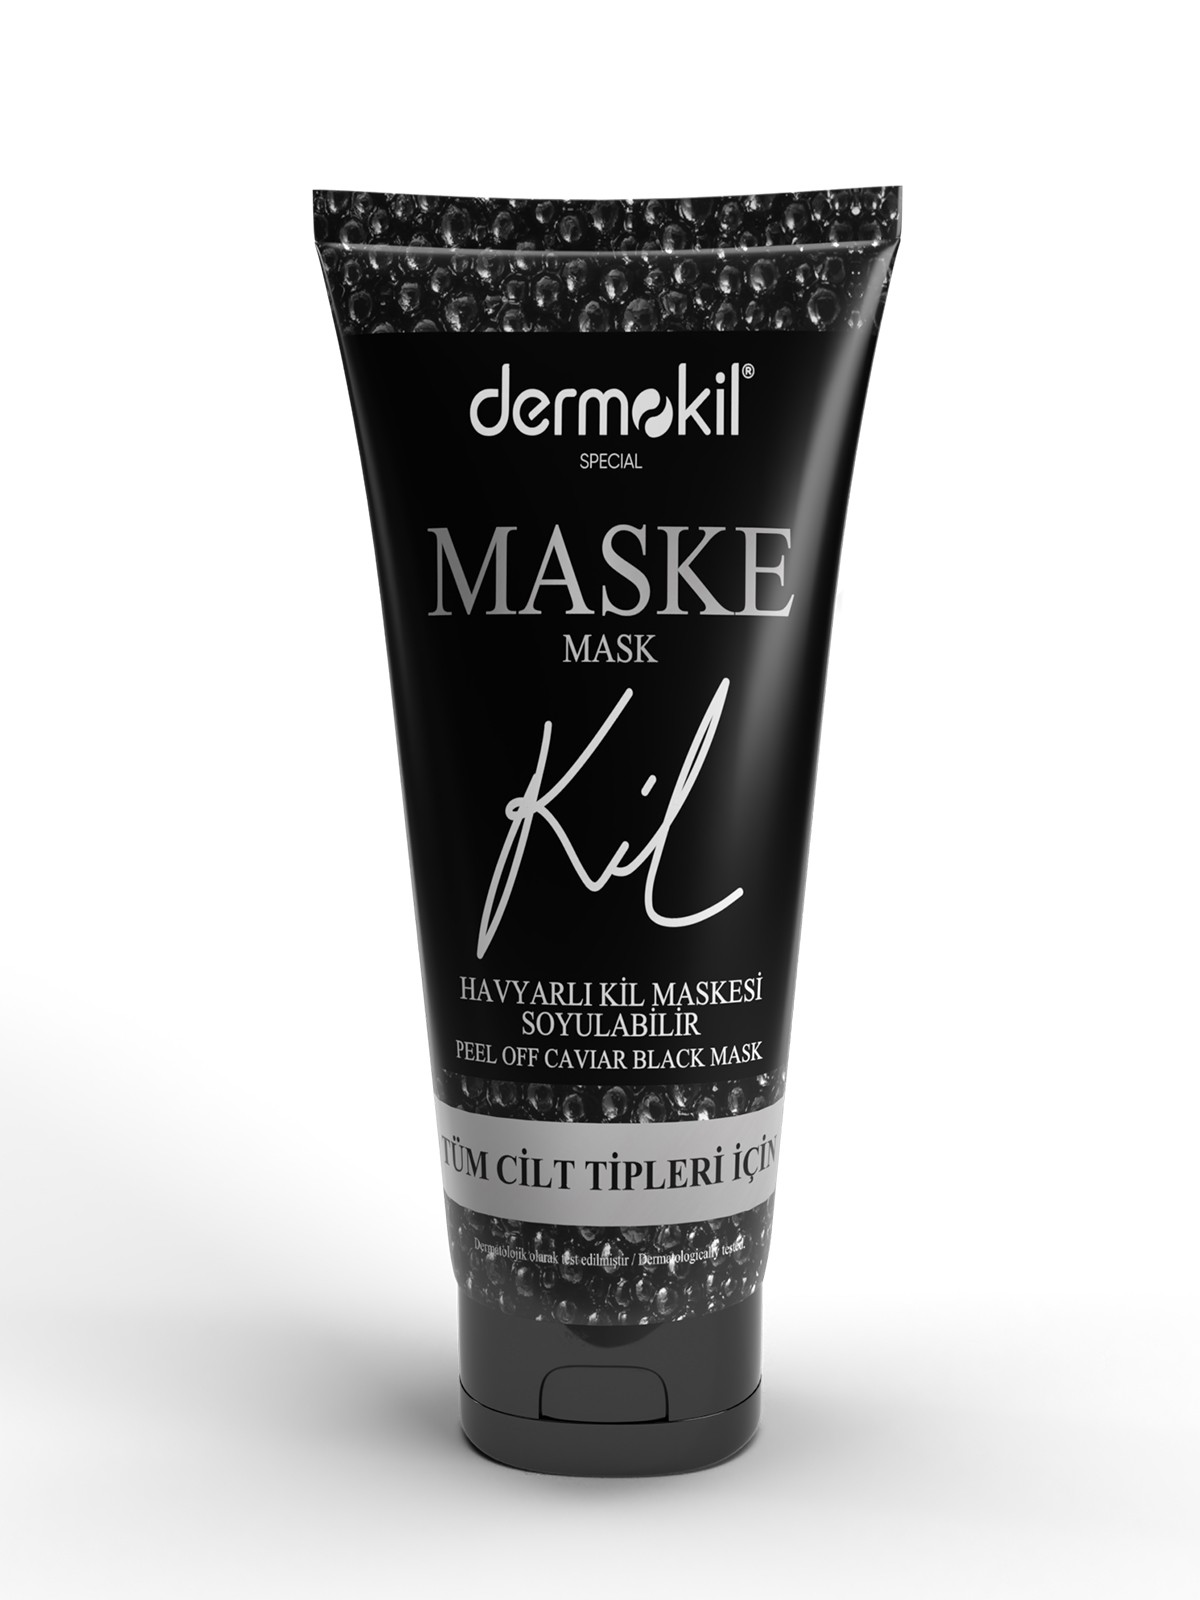 Soyulabilir Havyarlı  Siyah Kil Yüz Maskesi 75 ml (Tüm Cilt Tipleri İçin)